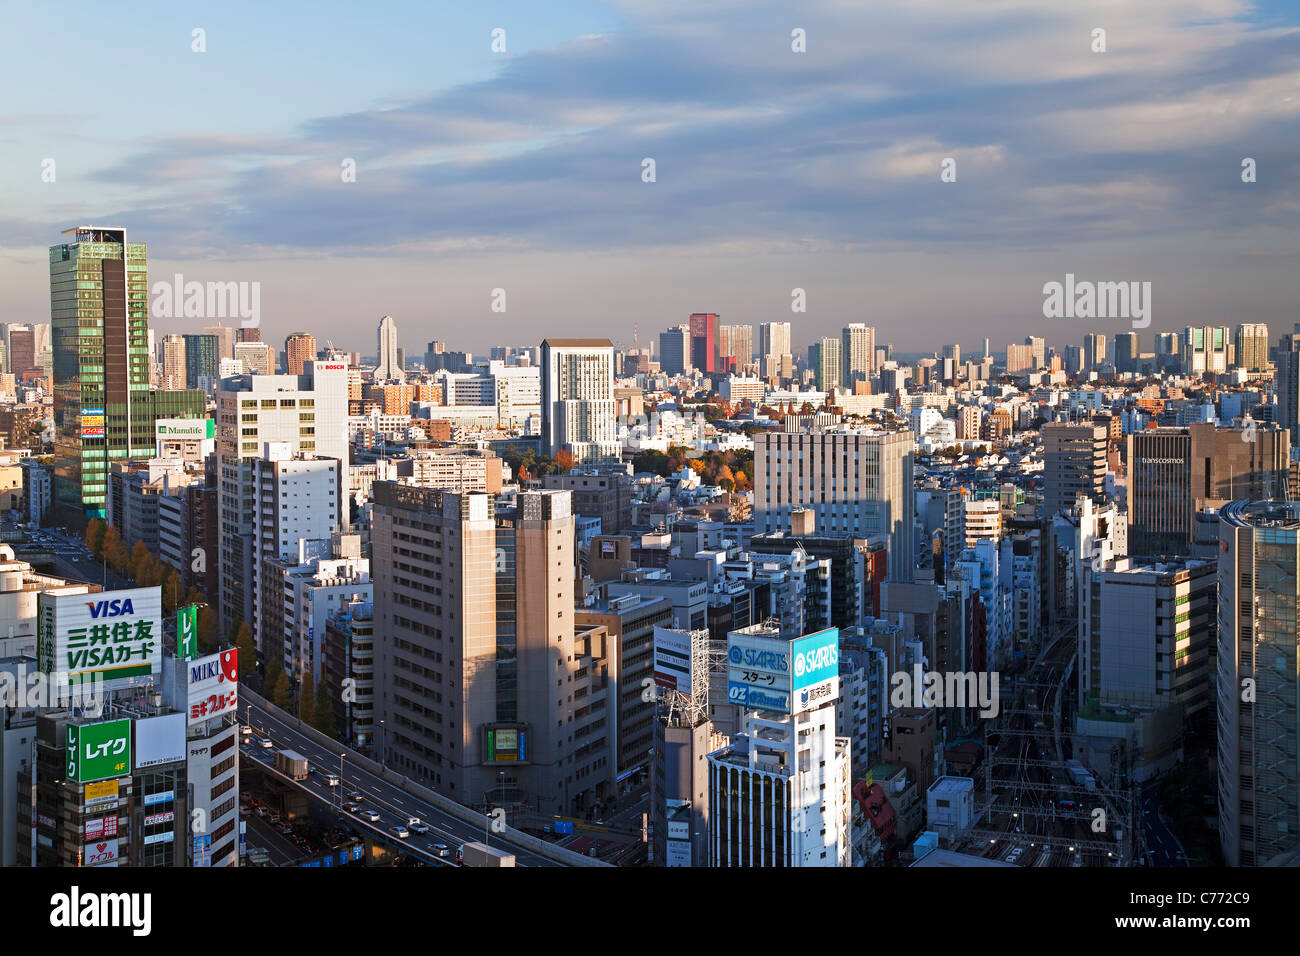 Asien, Japan, Tokyo, Tokyo Skyline vom Stadtteil Shibuya - erhöhte Stockfoto